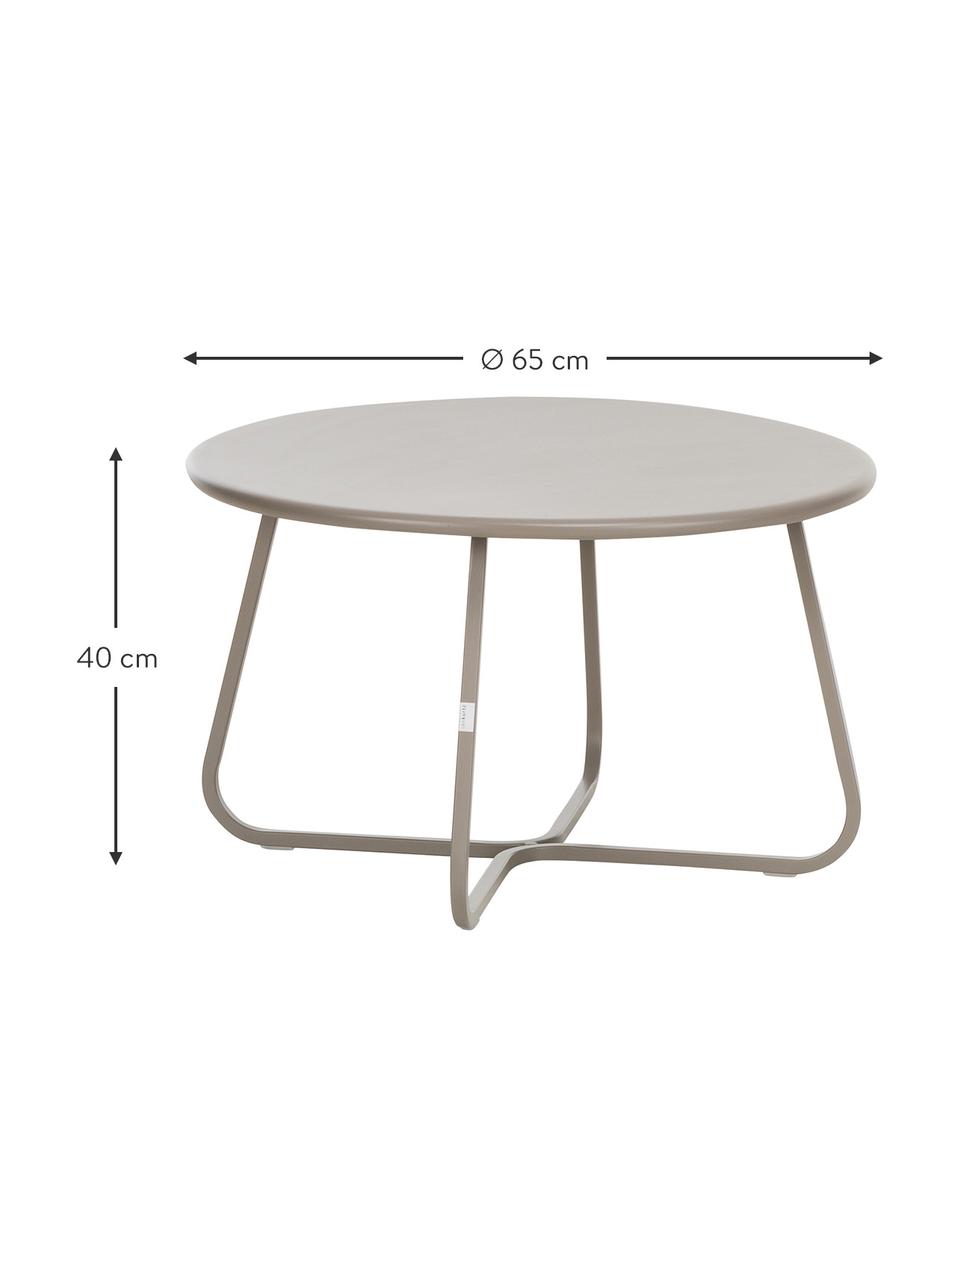 Zahradní konferenční stolek Sunderland, Galvanizovaná, pozinkovaná ocel s práškovým nástřikem, Taupe, Ø 65 cm, V 40 cm